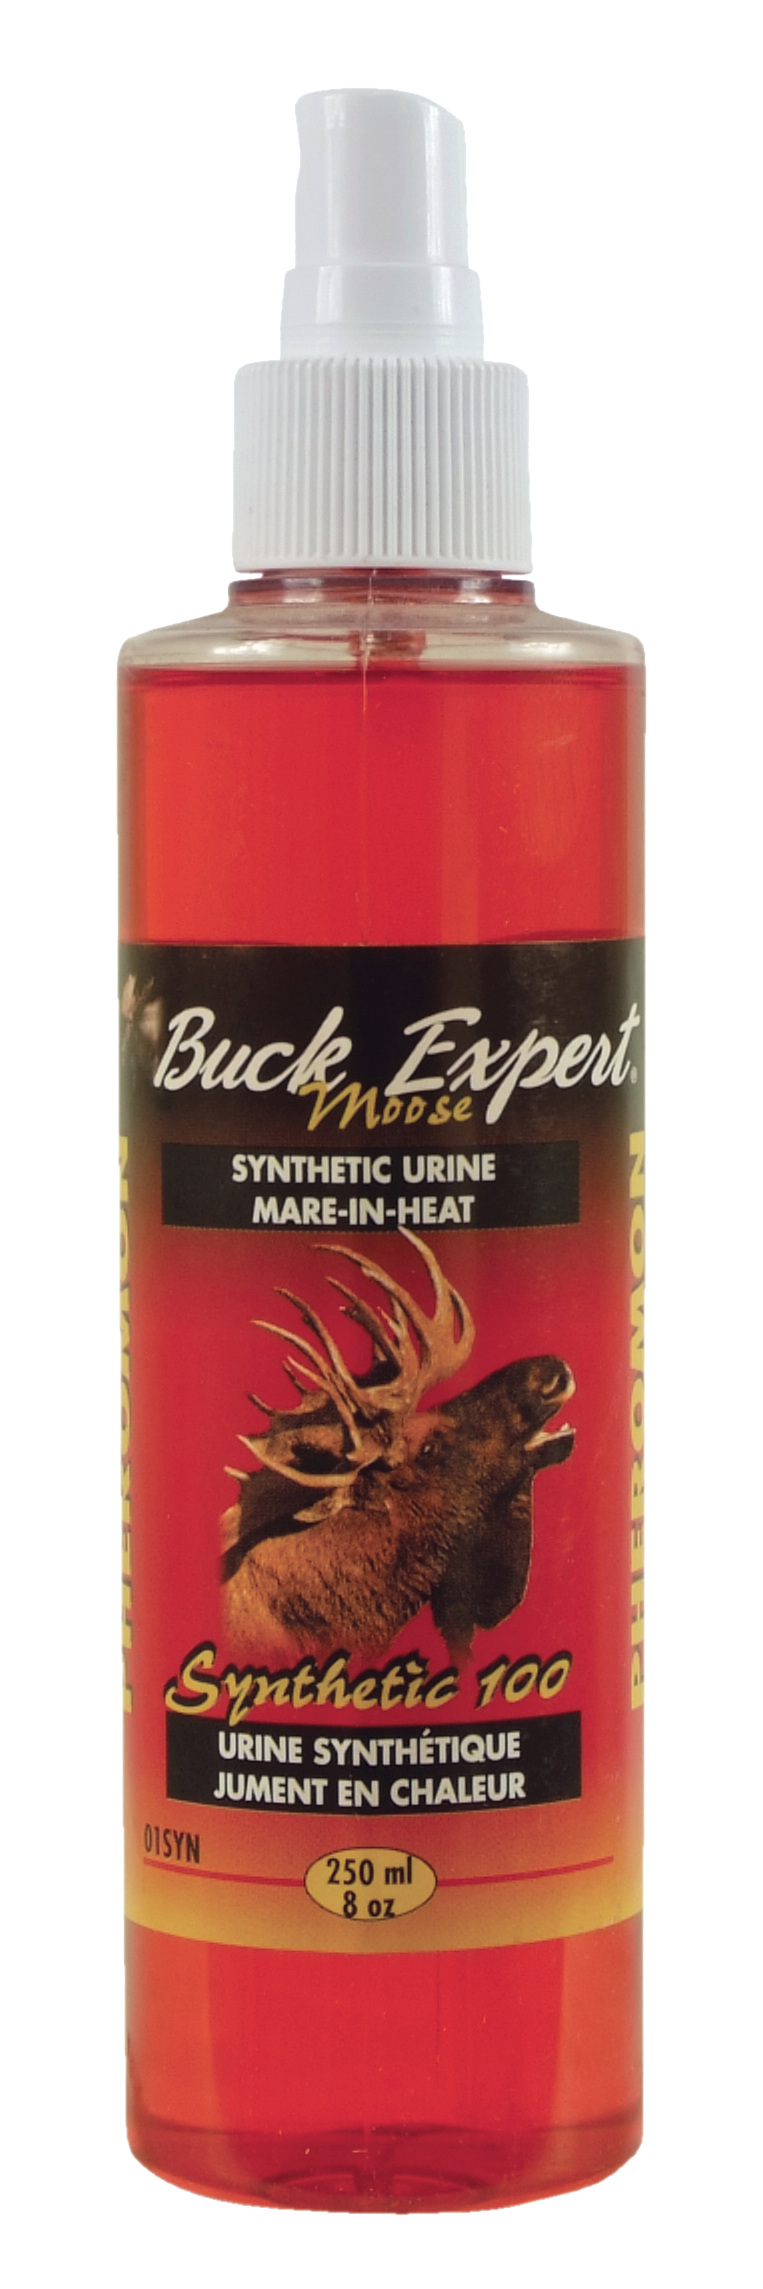 Urine de jument en chaleur de Buck Expert (combo)